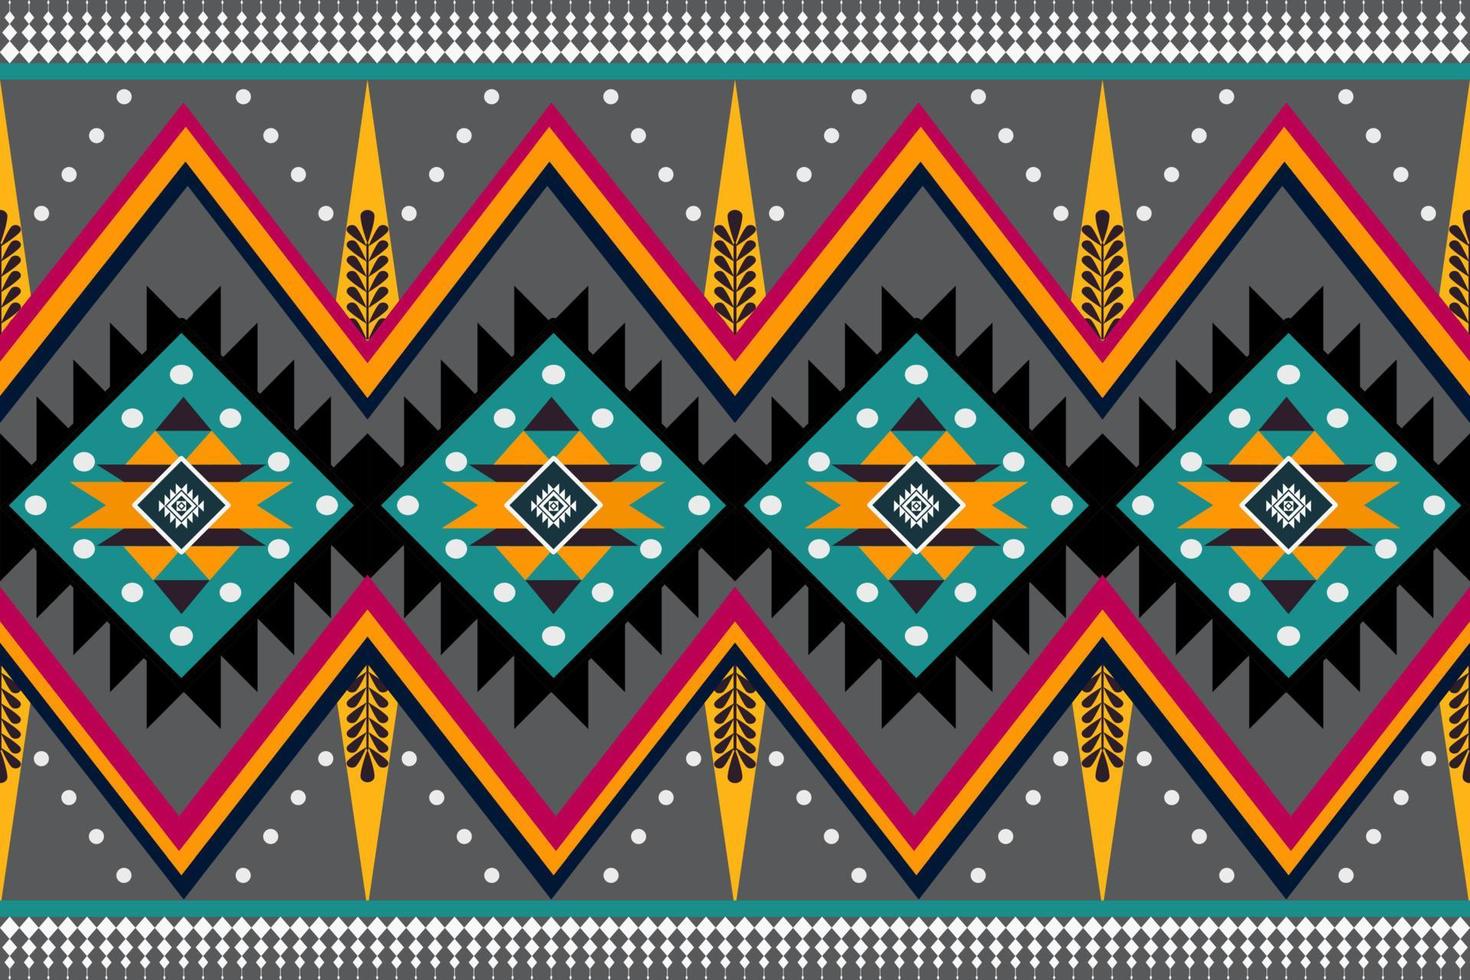 vetor de padrão sem emenda geométrico étnico. padrão de motivo asteca americano árabe africano. elementos vetoriais projetados para fundo, papel de parede, impressão, embrulho, azulejo, padrão de tecido. padrão de vetor.